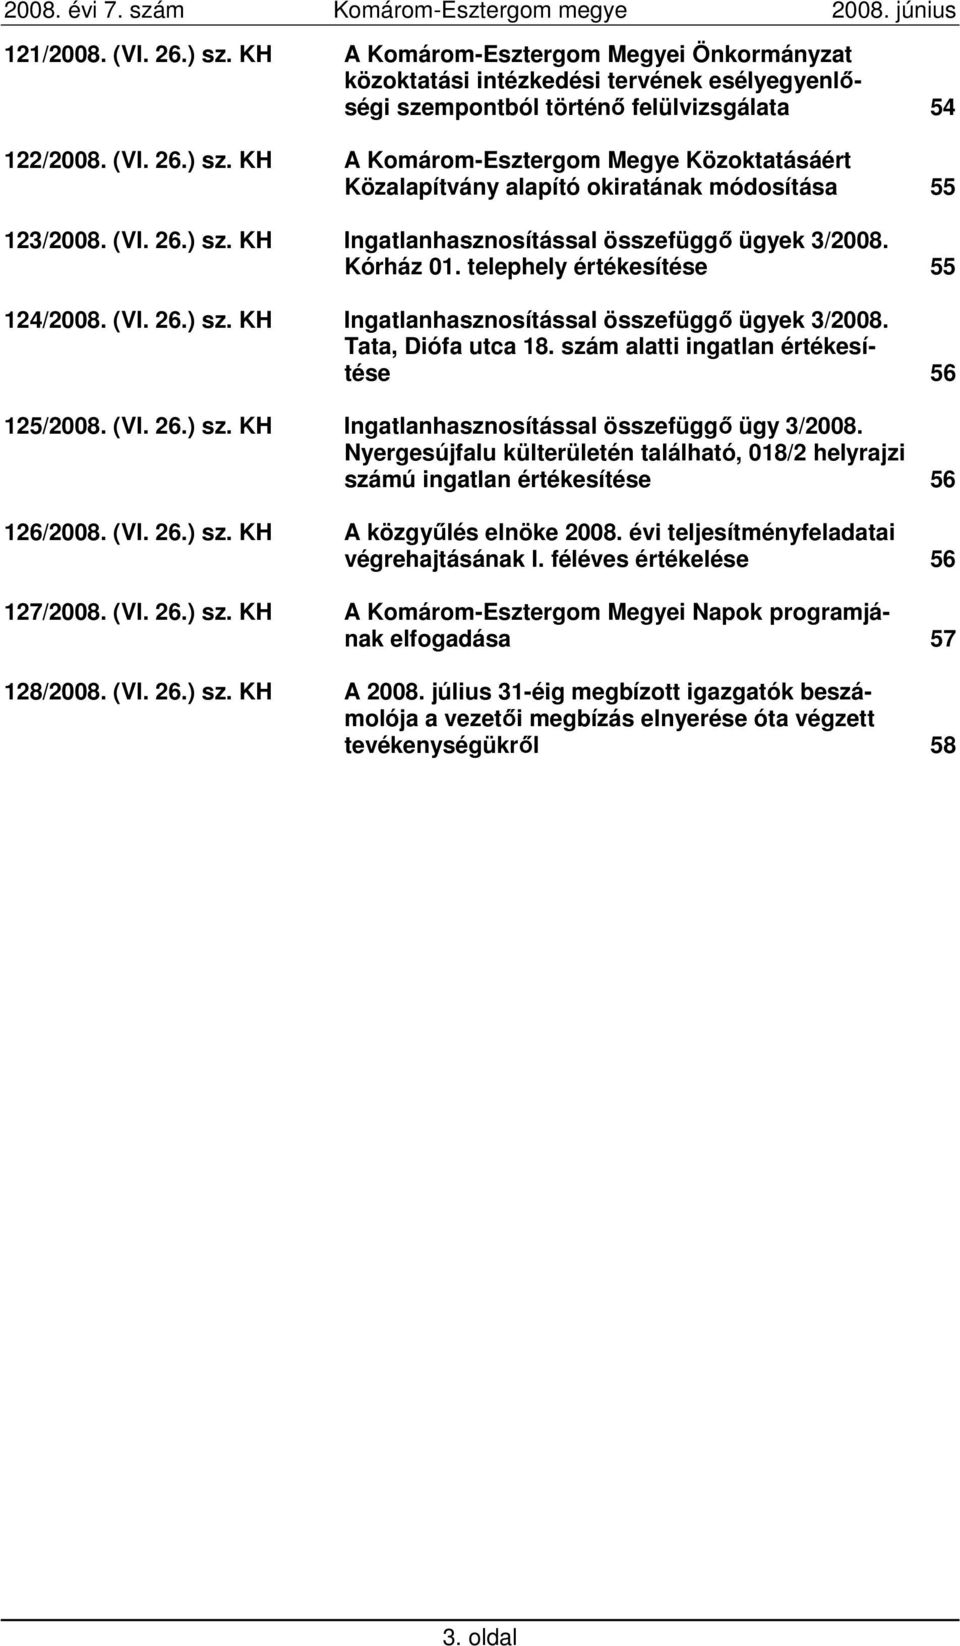 szám alatti ingatlan értékesítése 56 125/2008. (VI. 26.) sz. KH Ingatlanhasznosítással összefüggı ügy 3/2008.